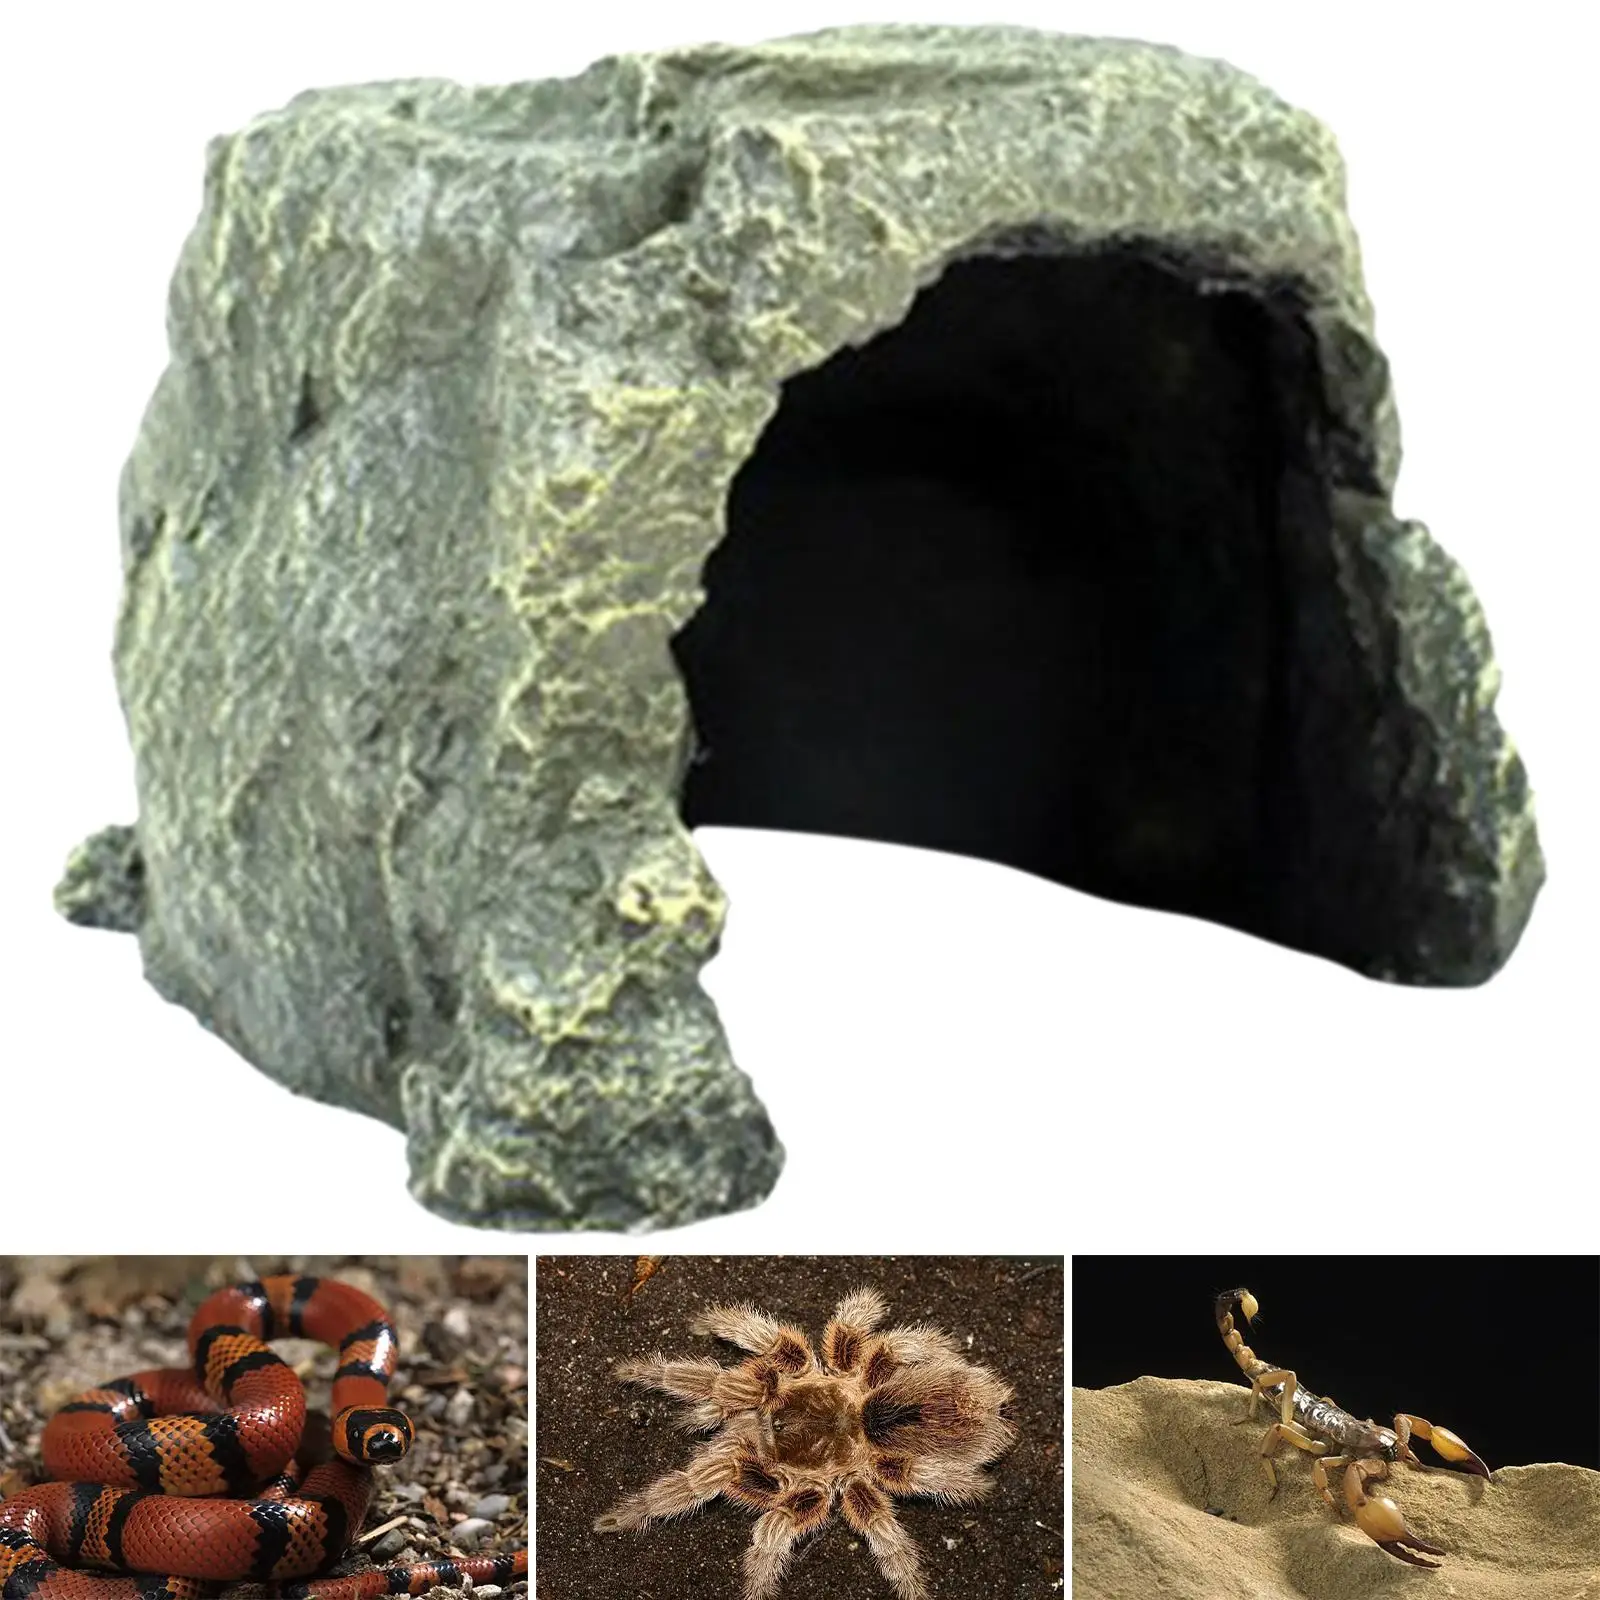 Reptile Hideout Cave Landscape Ornament Hide Habitat Shelter for Spiders